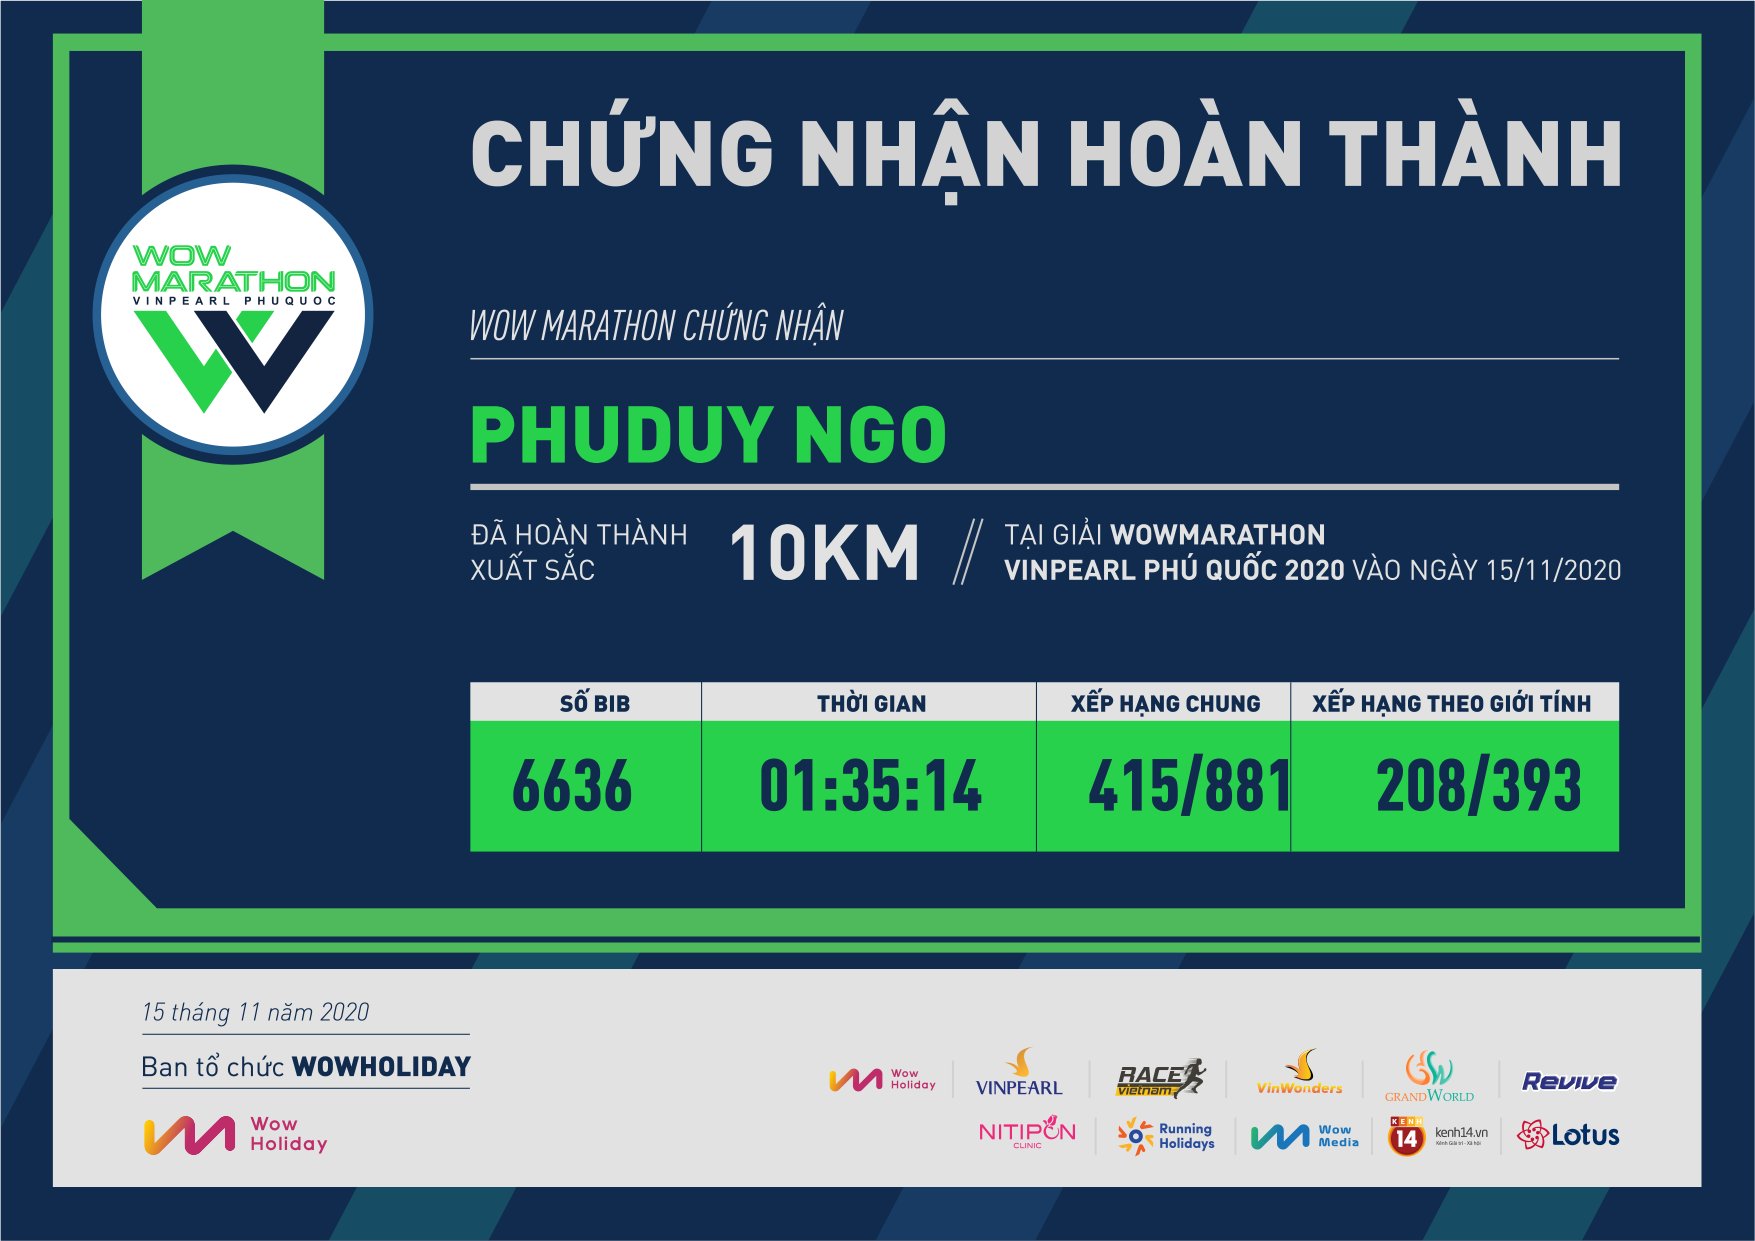 6636 - Phuduy Ngo